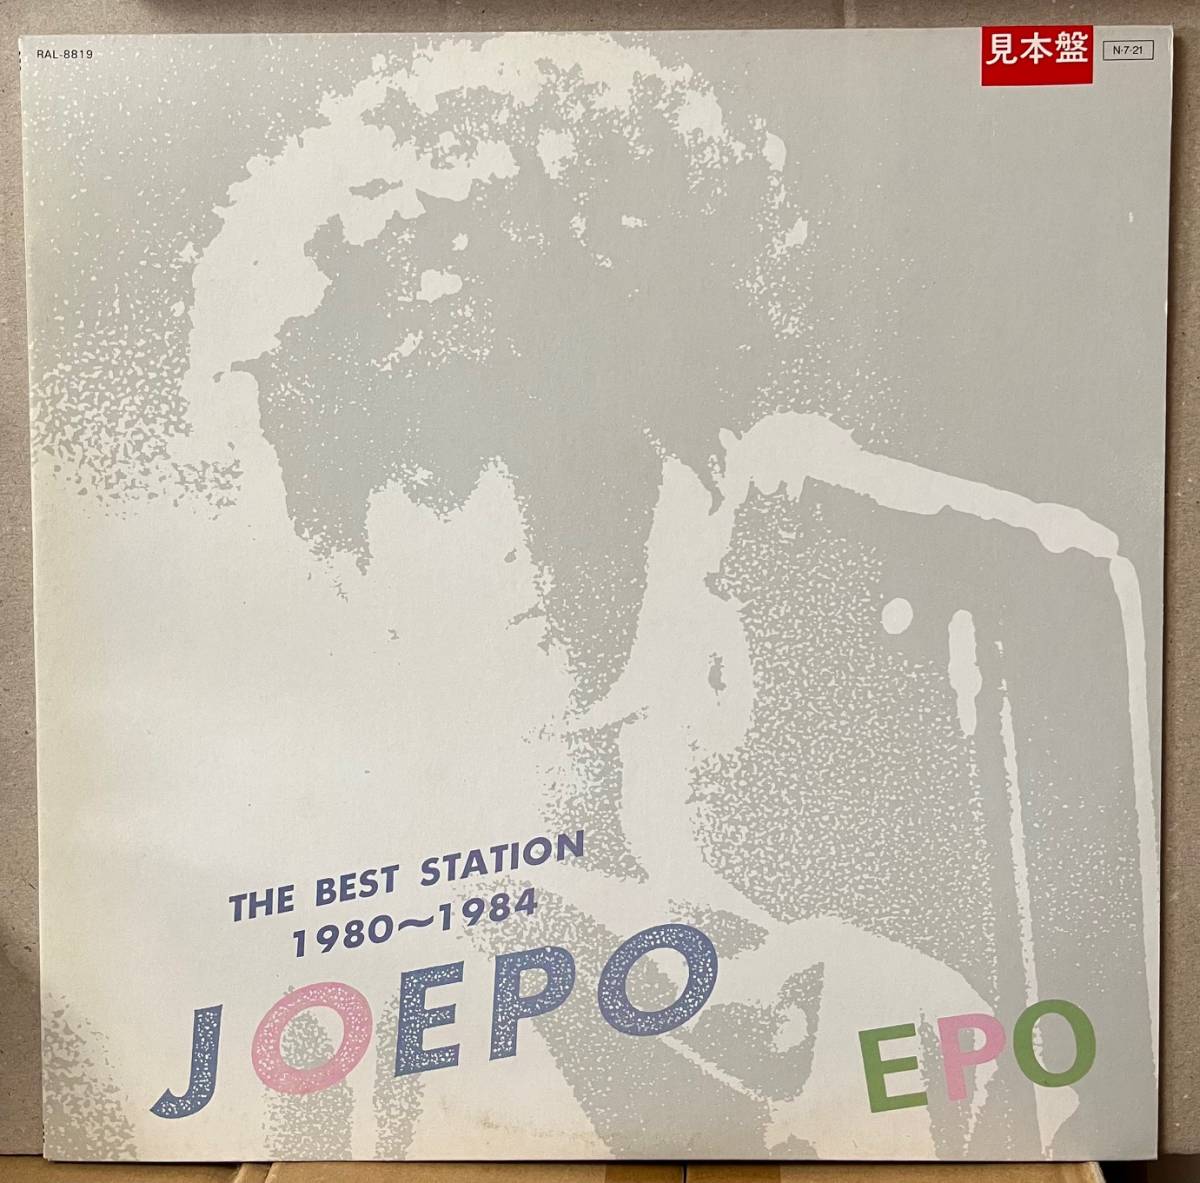 盤美品 EPO JOEPO The Best Station LP 見本盤 シティポップ 名盤 Promo Press 清水信之 山下達郎 大貫妙子_画像1